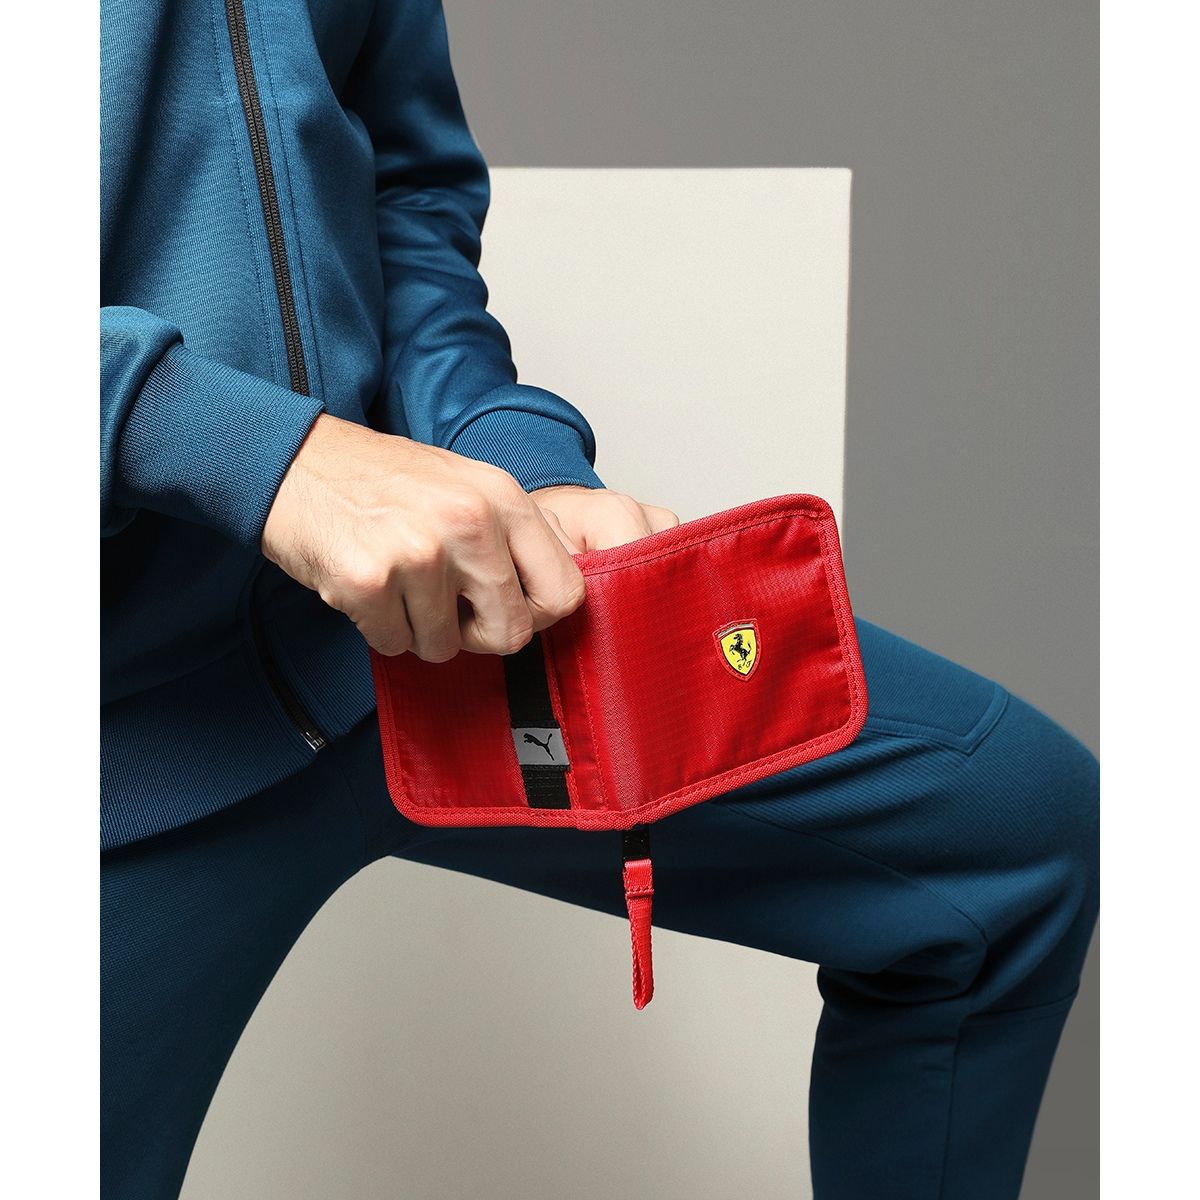 PUMA x Scuderia Ferrari Men's Wallet: Buy Online at Best Price in UAE -  Amazon.ae